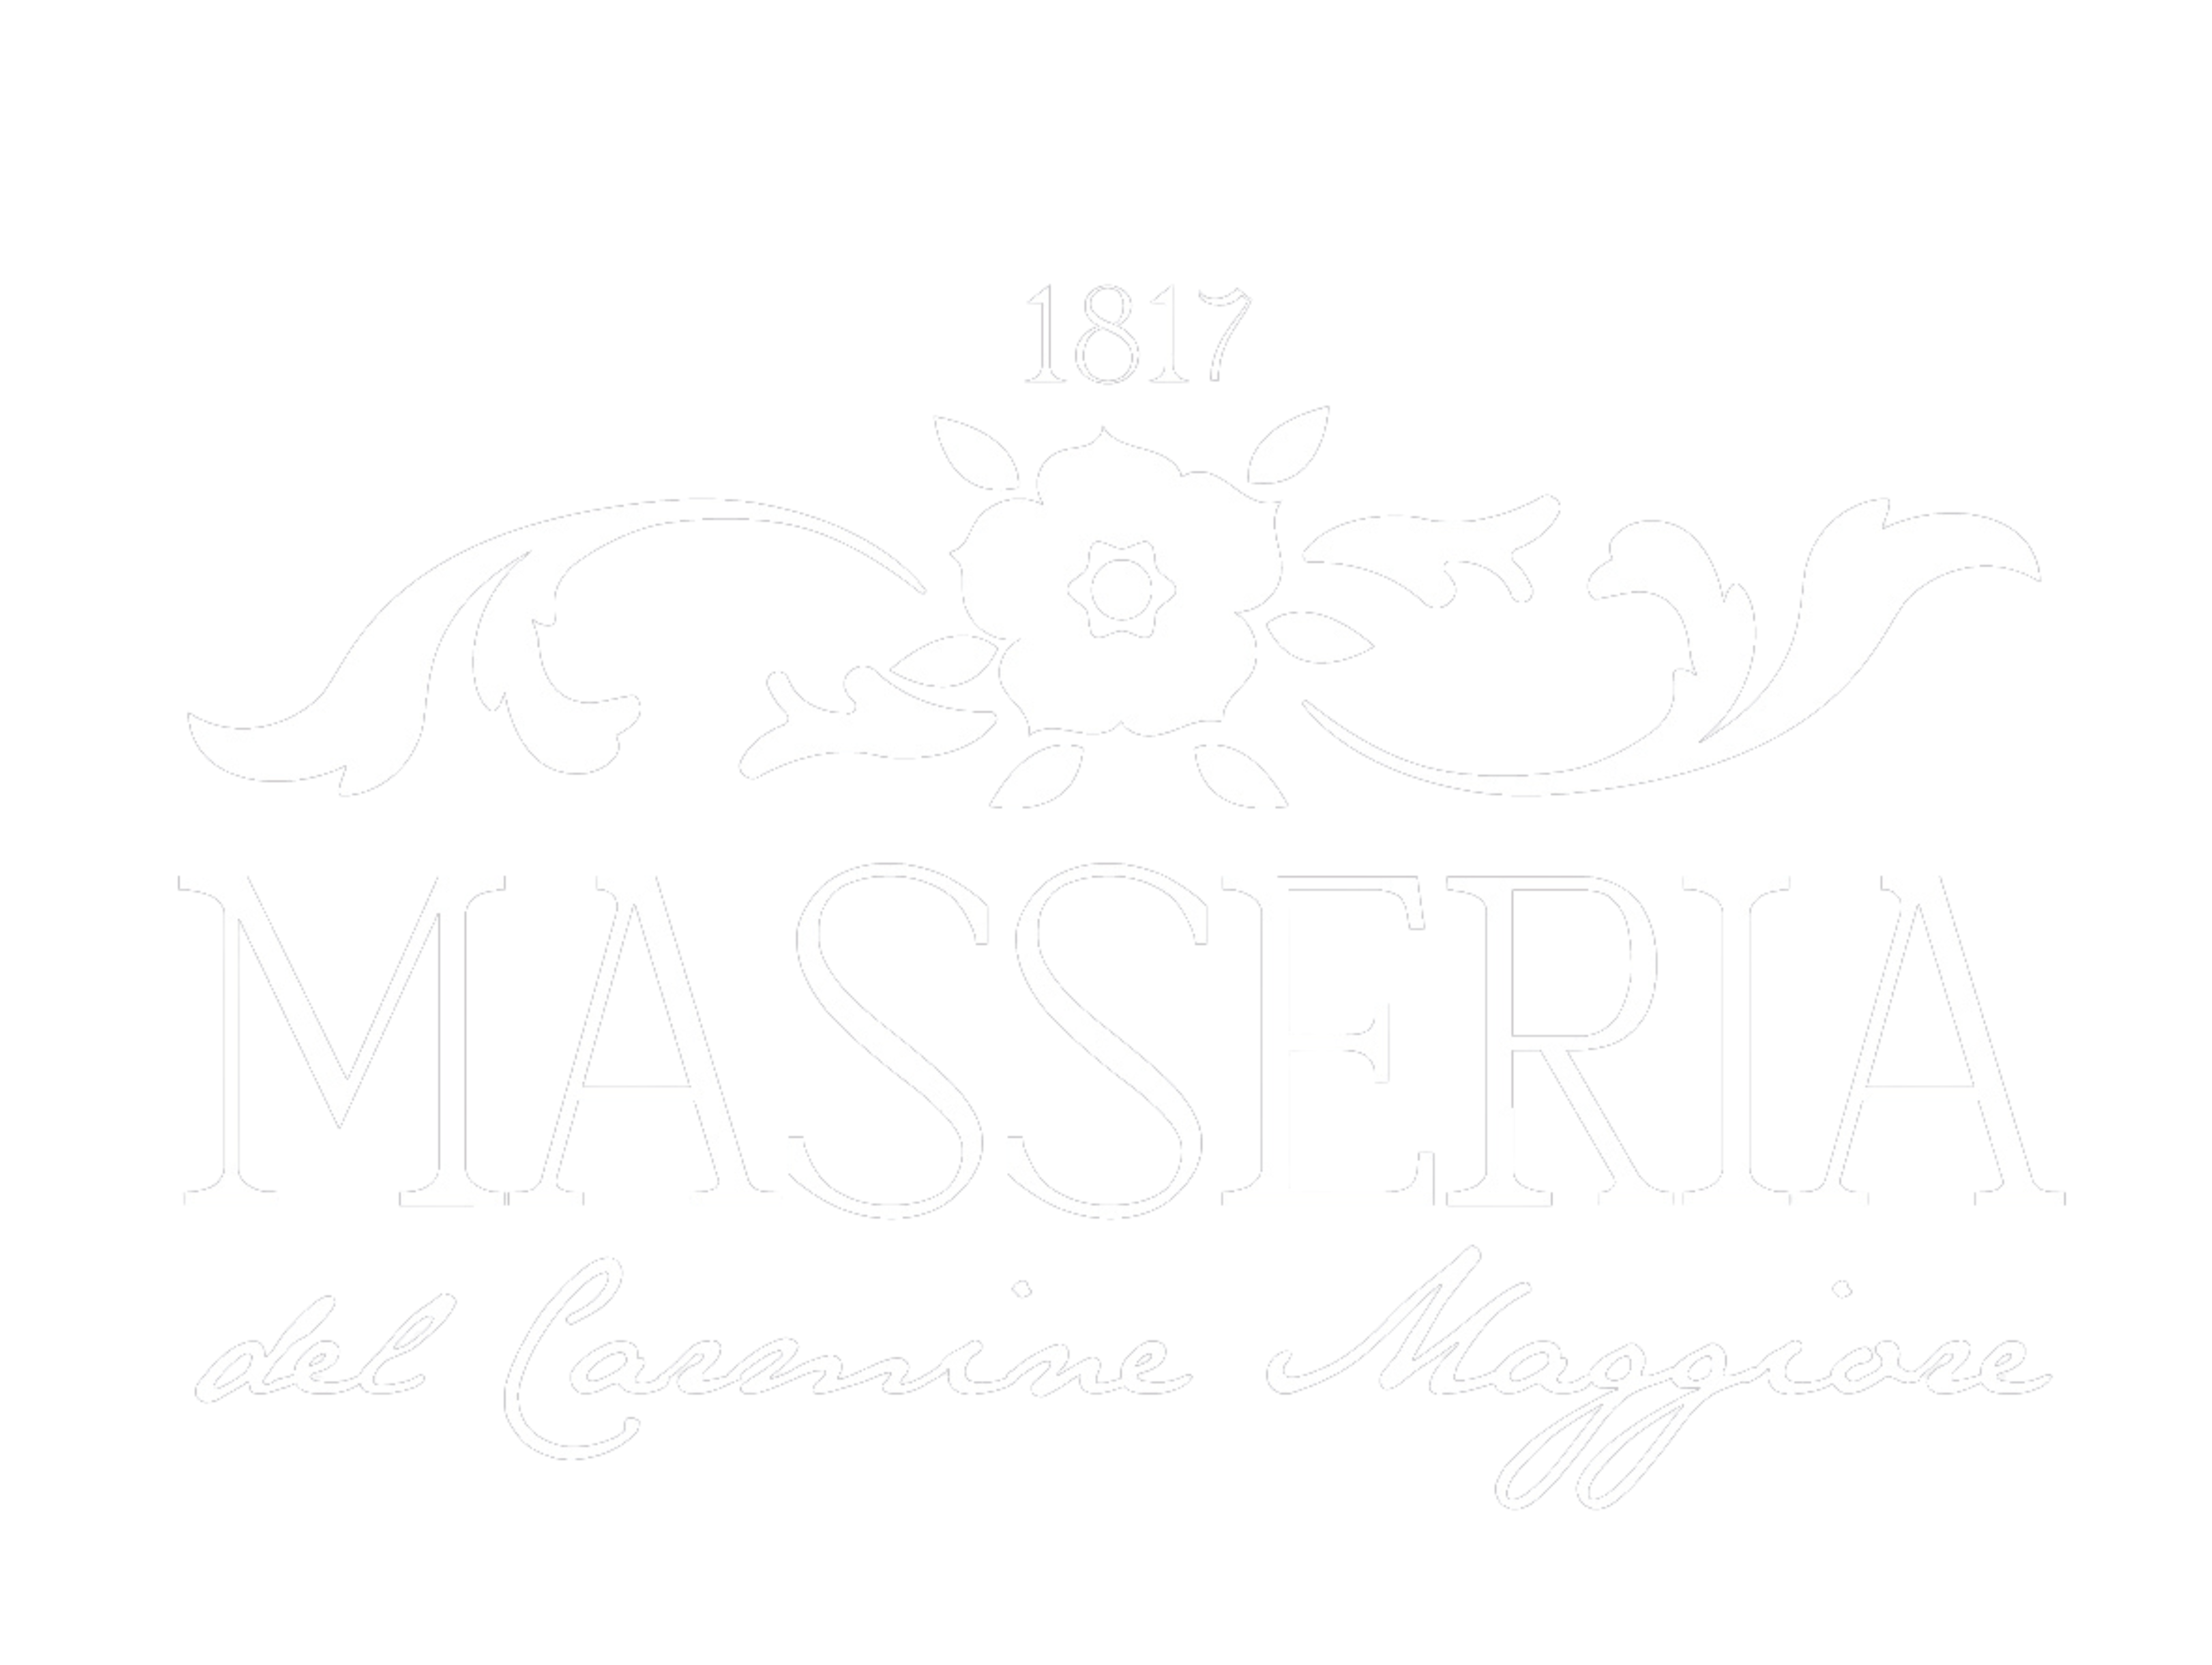 Masseria del Carmine Maggiore 1817